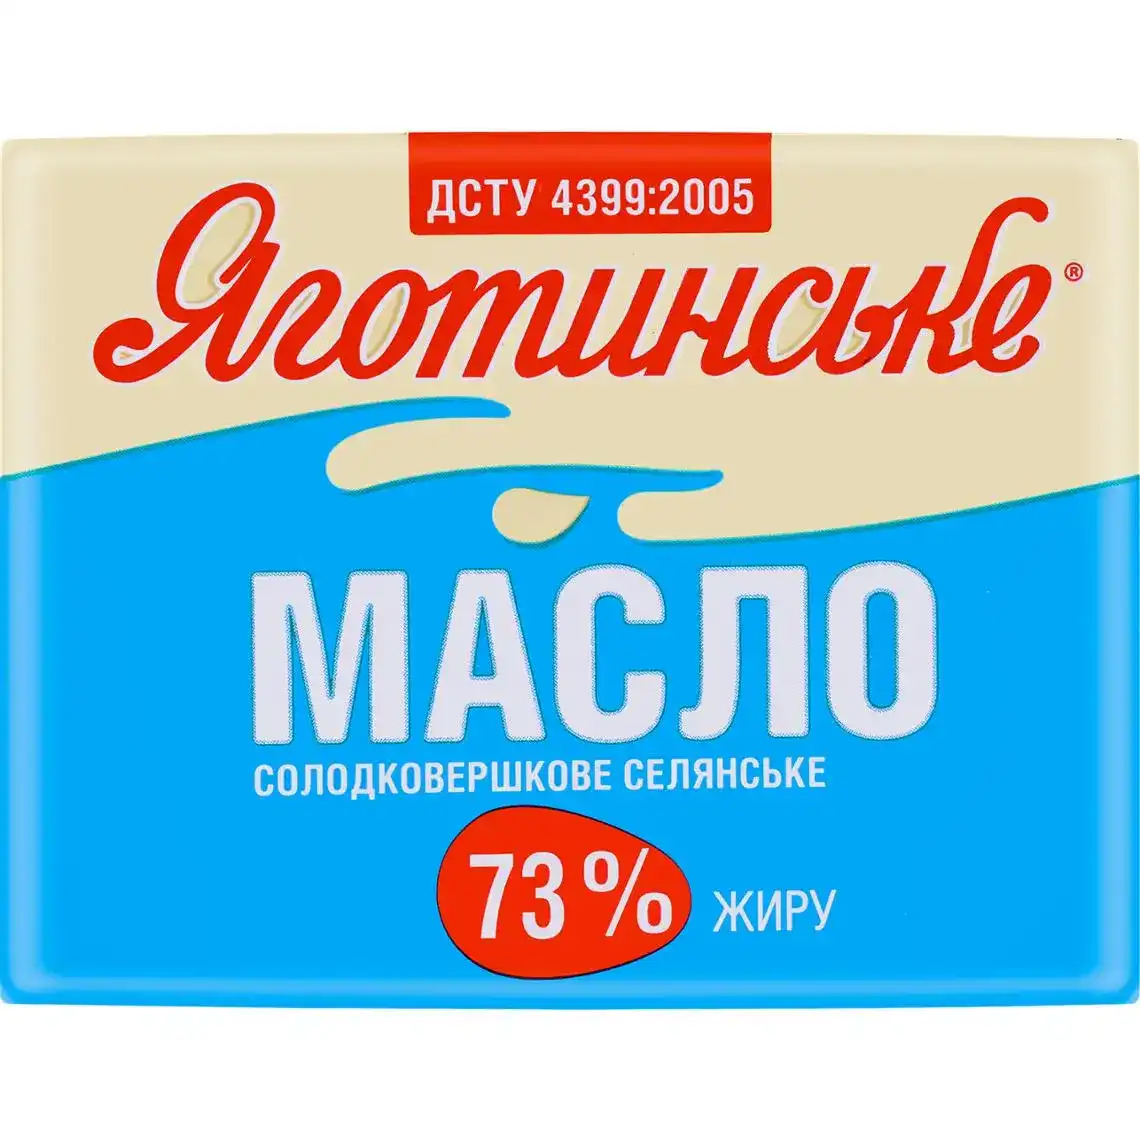 Масло Яготинське селянське солодковершкове 73% 180 г